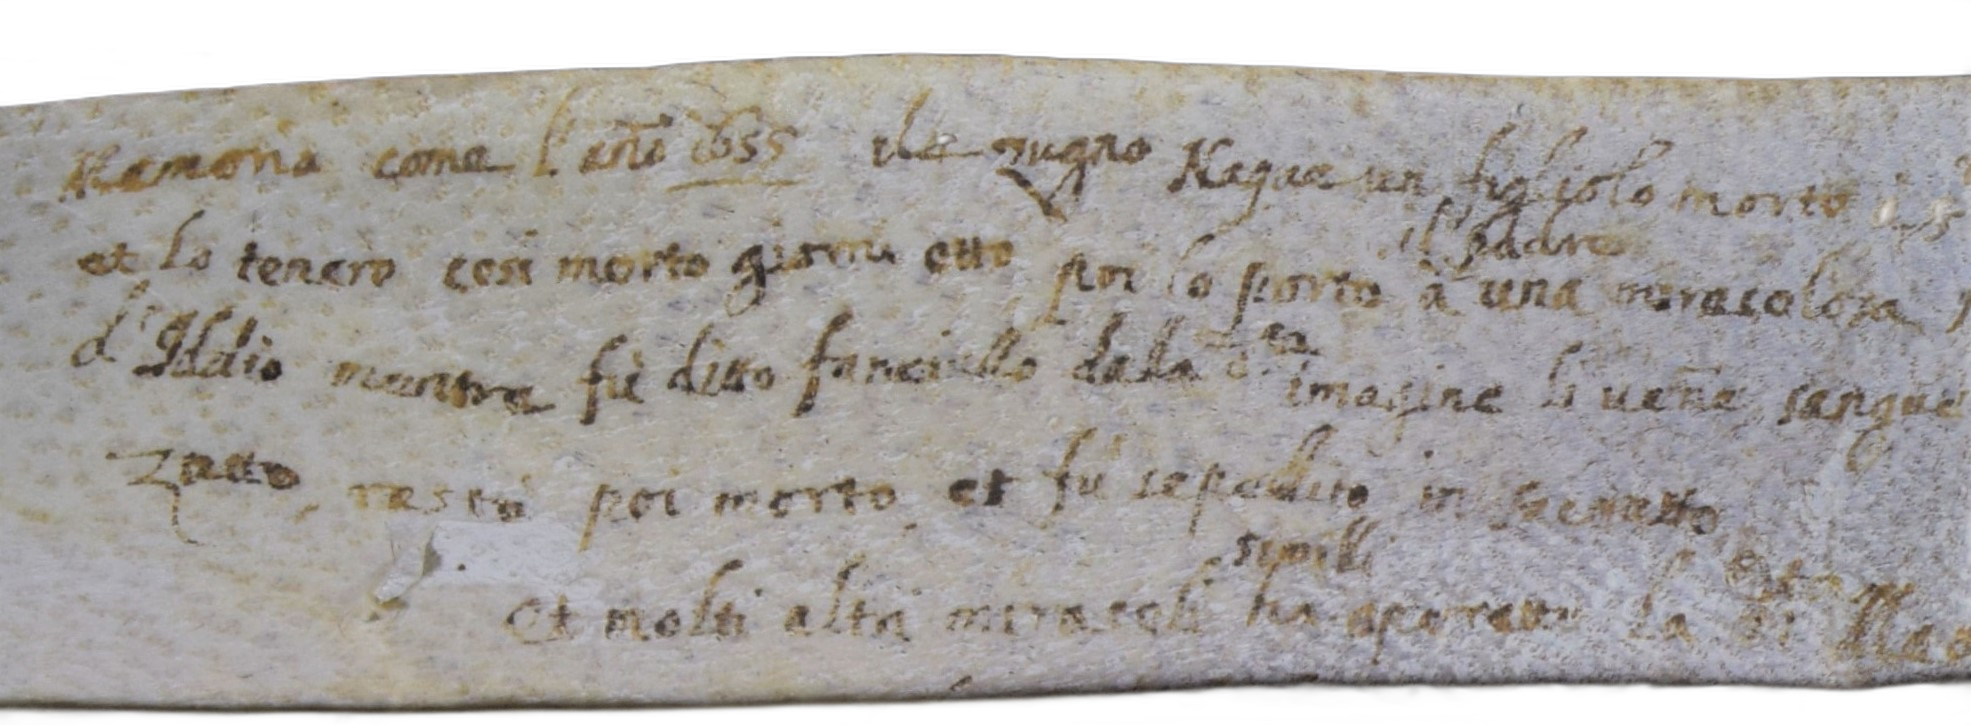 Nota del giugno 1655, particolare registro Notarile, Andrea Mattiello